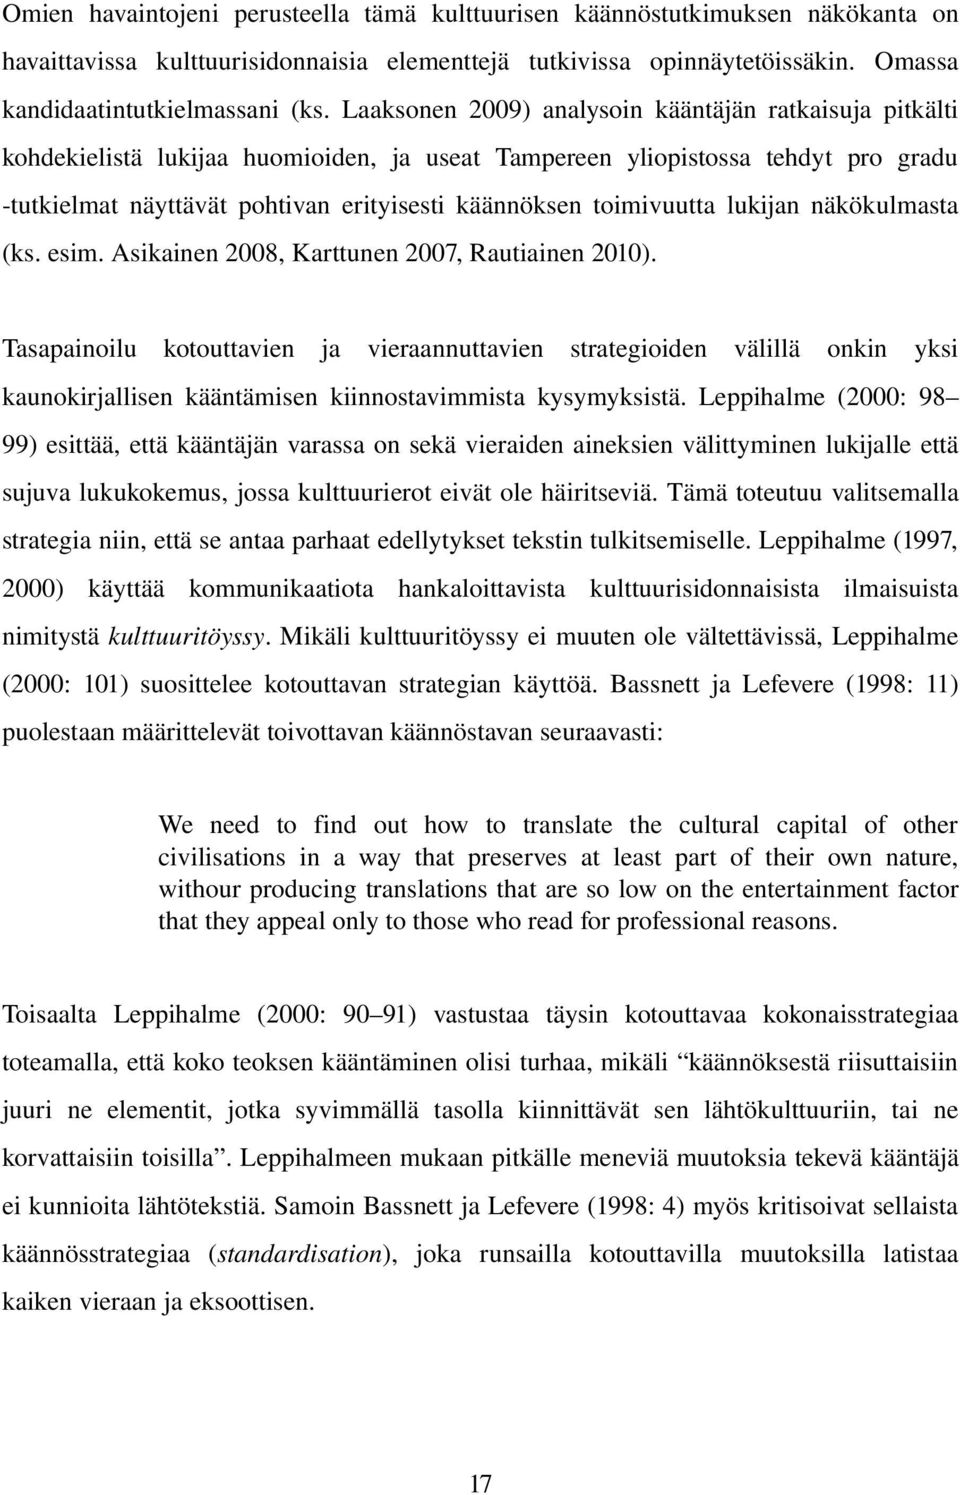 toimivuutta lukijan näkökulmasta (ks. esim. Asikainen 2008, Karttunen 2007, Rautiainen 2010).